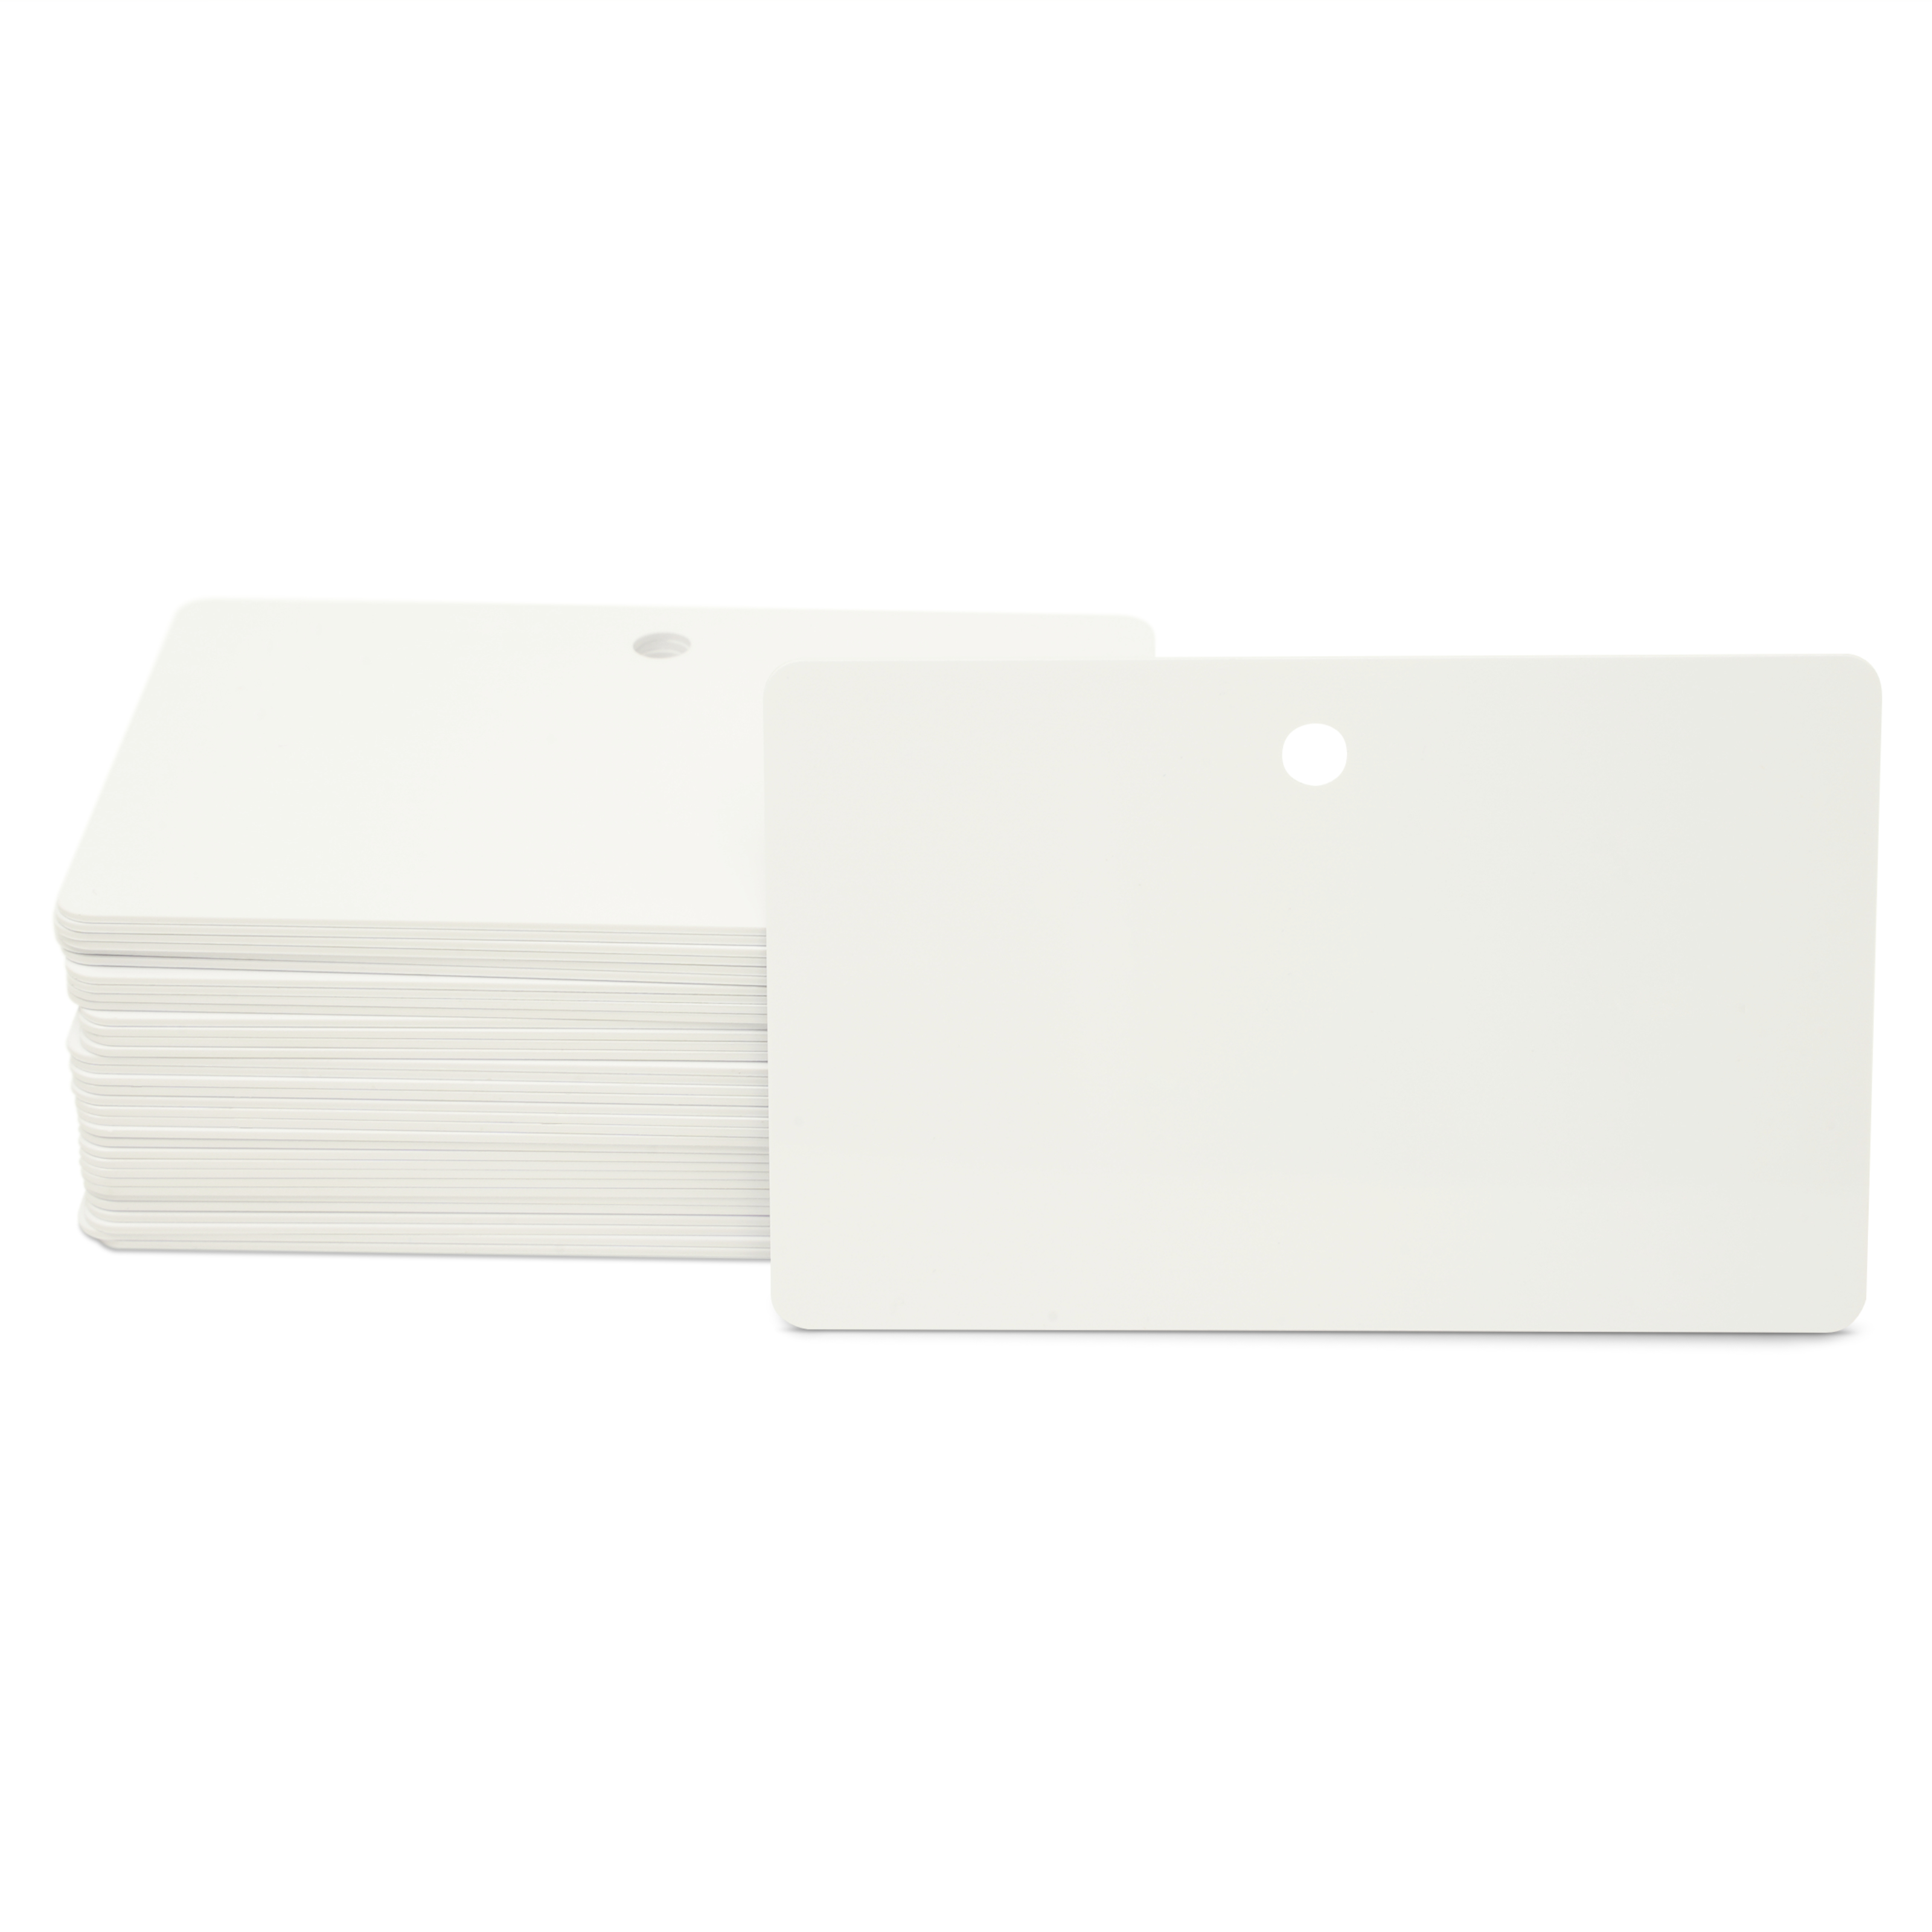 Stapel mit mehreren NFC Karten in weiß  mit Lochung im Querformat